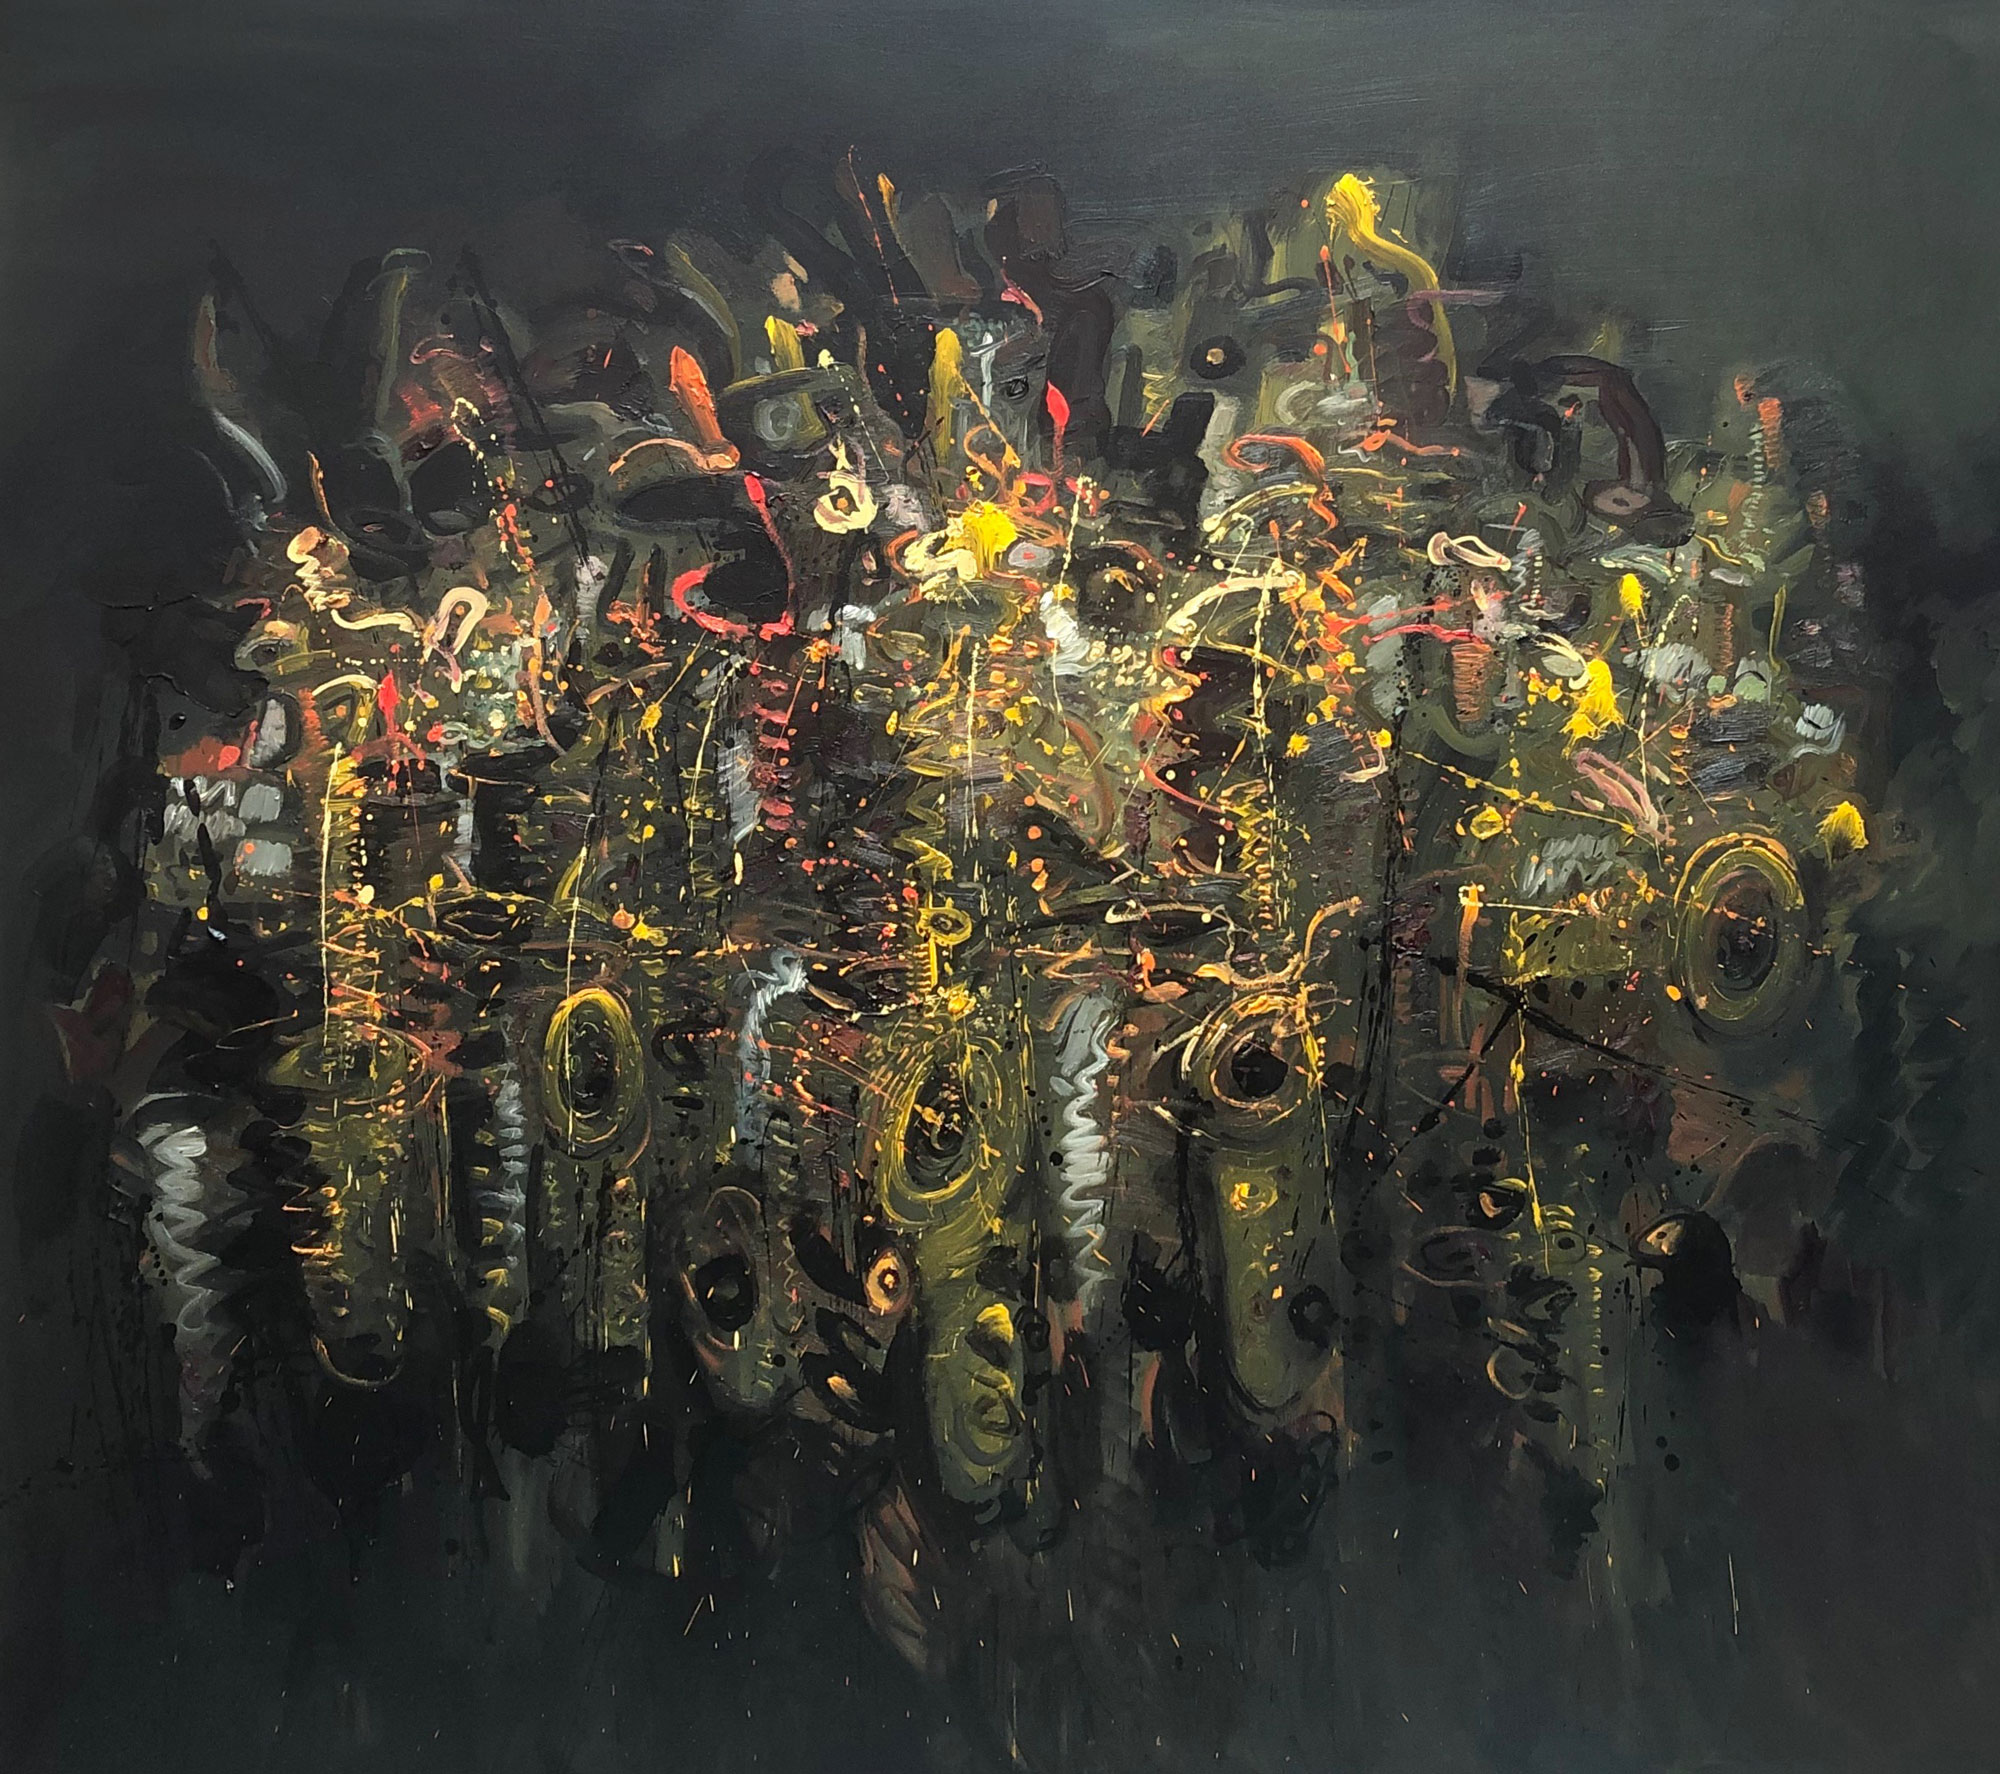 005-Los-saxofones-de-Rembrandt-III-2019-oleo-sobre-tela-de-180-x-200-cm